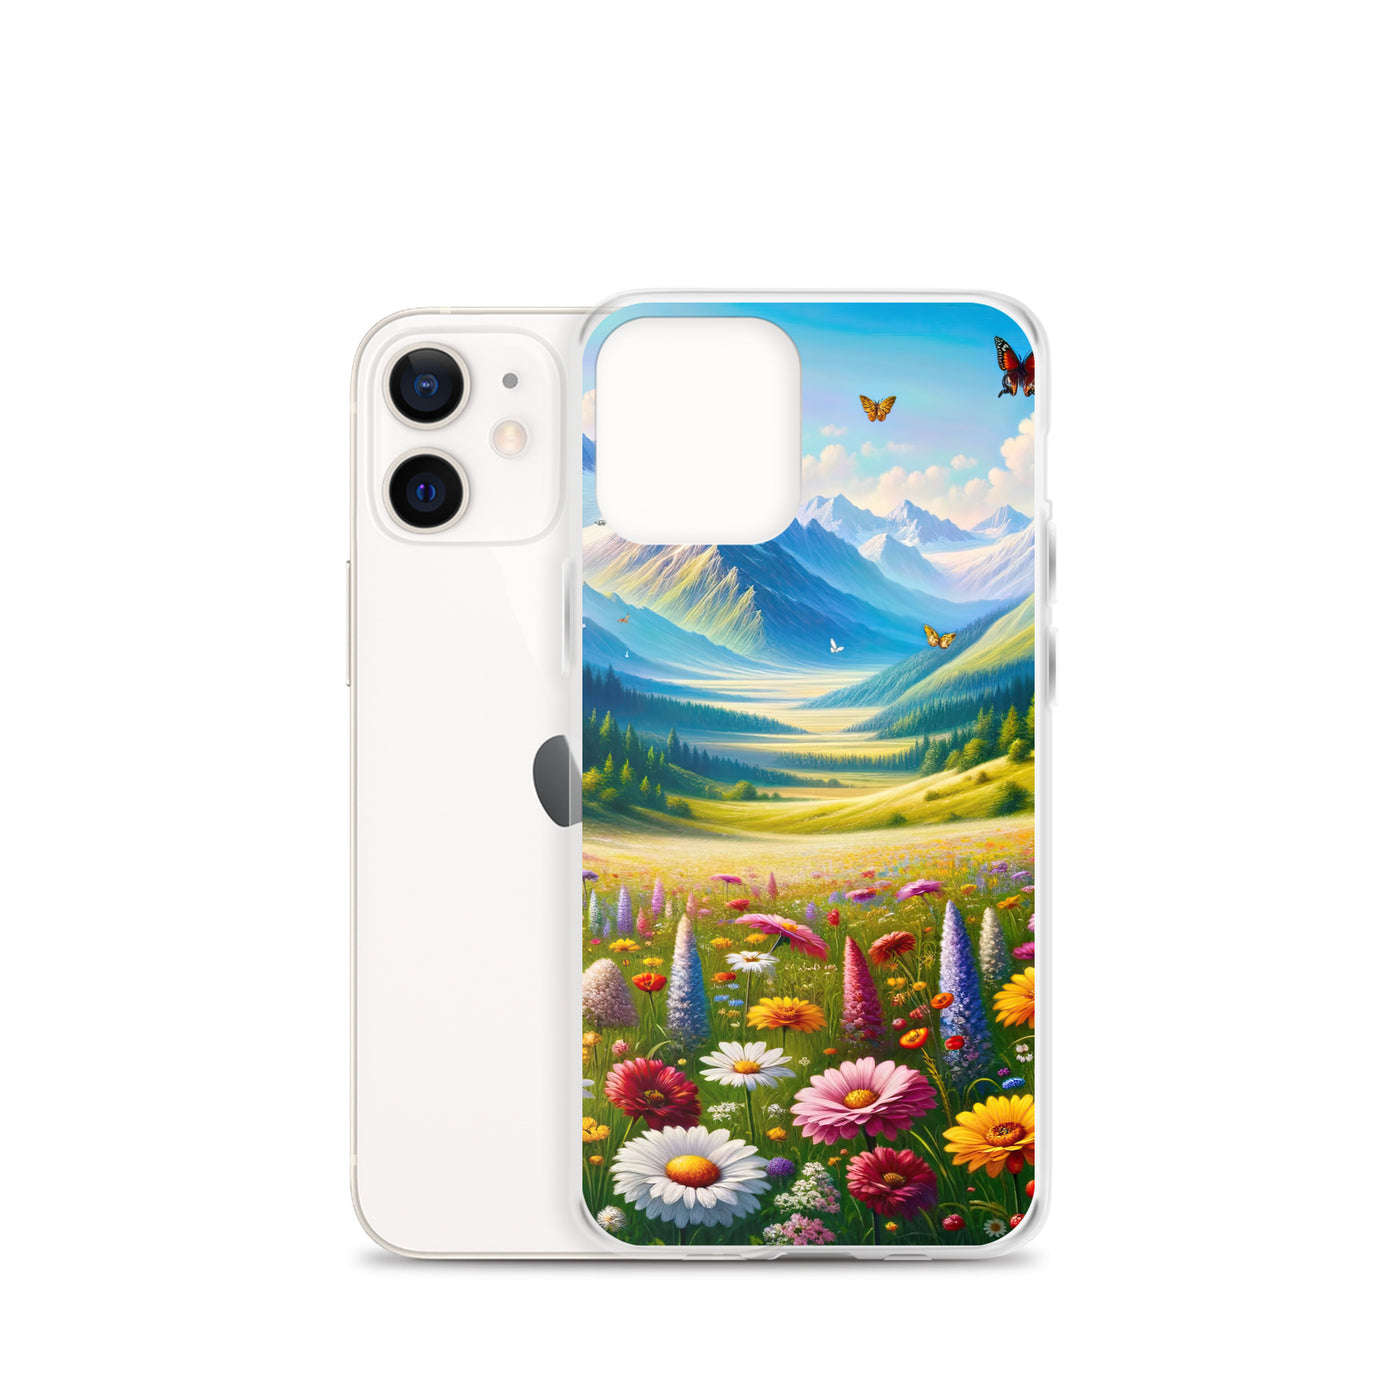 Ölgemälde einer ruhigen Almwiese, Oase mit bunter Wildblumenpracht - iPhone Schutzhülle (durchsichtig) camping xxx yyy zzz